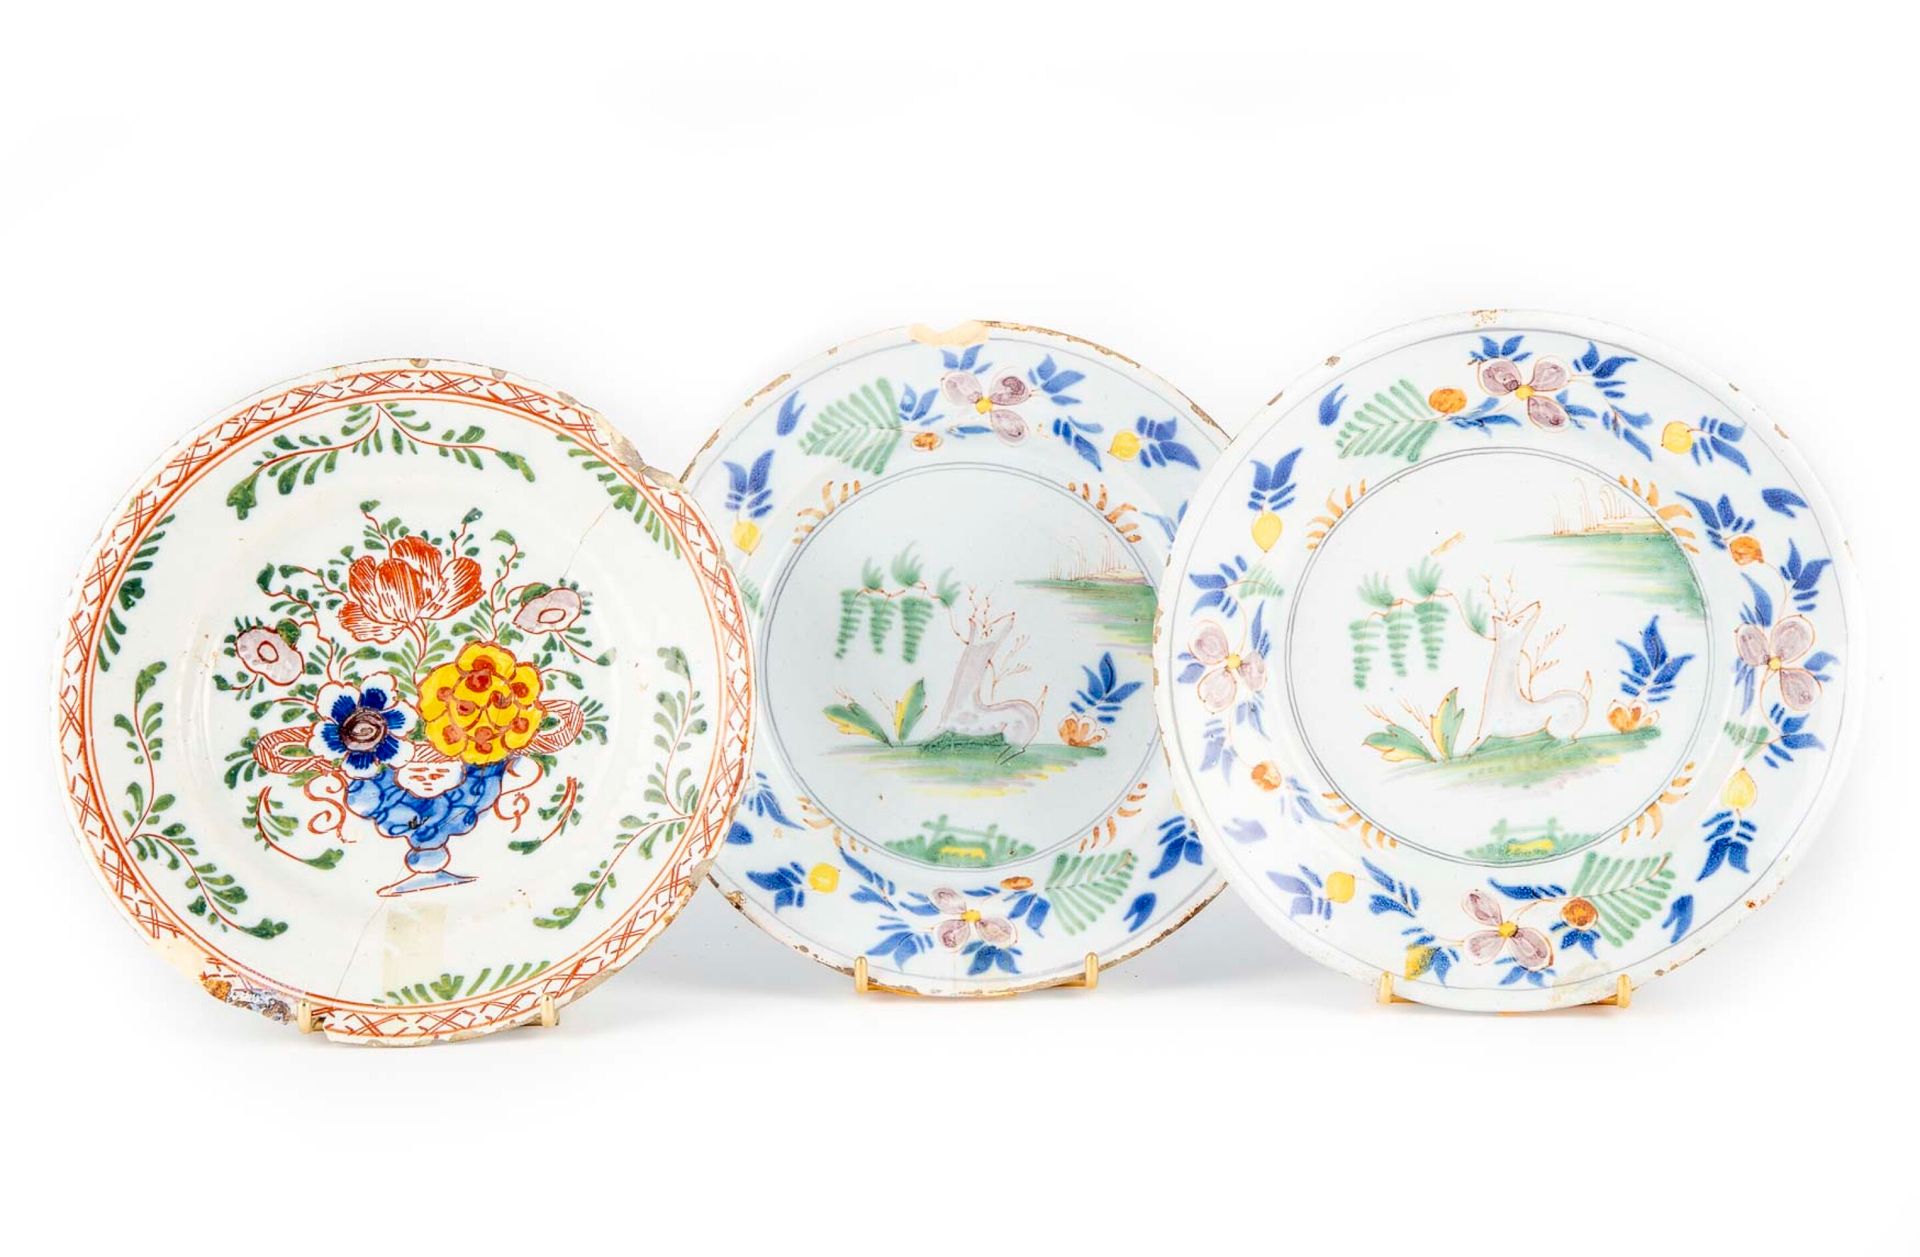 CHINE CINA - Compagnia delle Indie Orientali

Tre piatti in porcellana con decor&hellip;